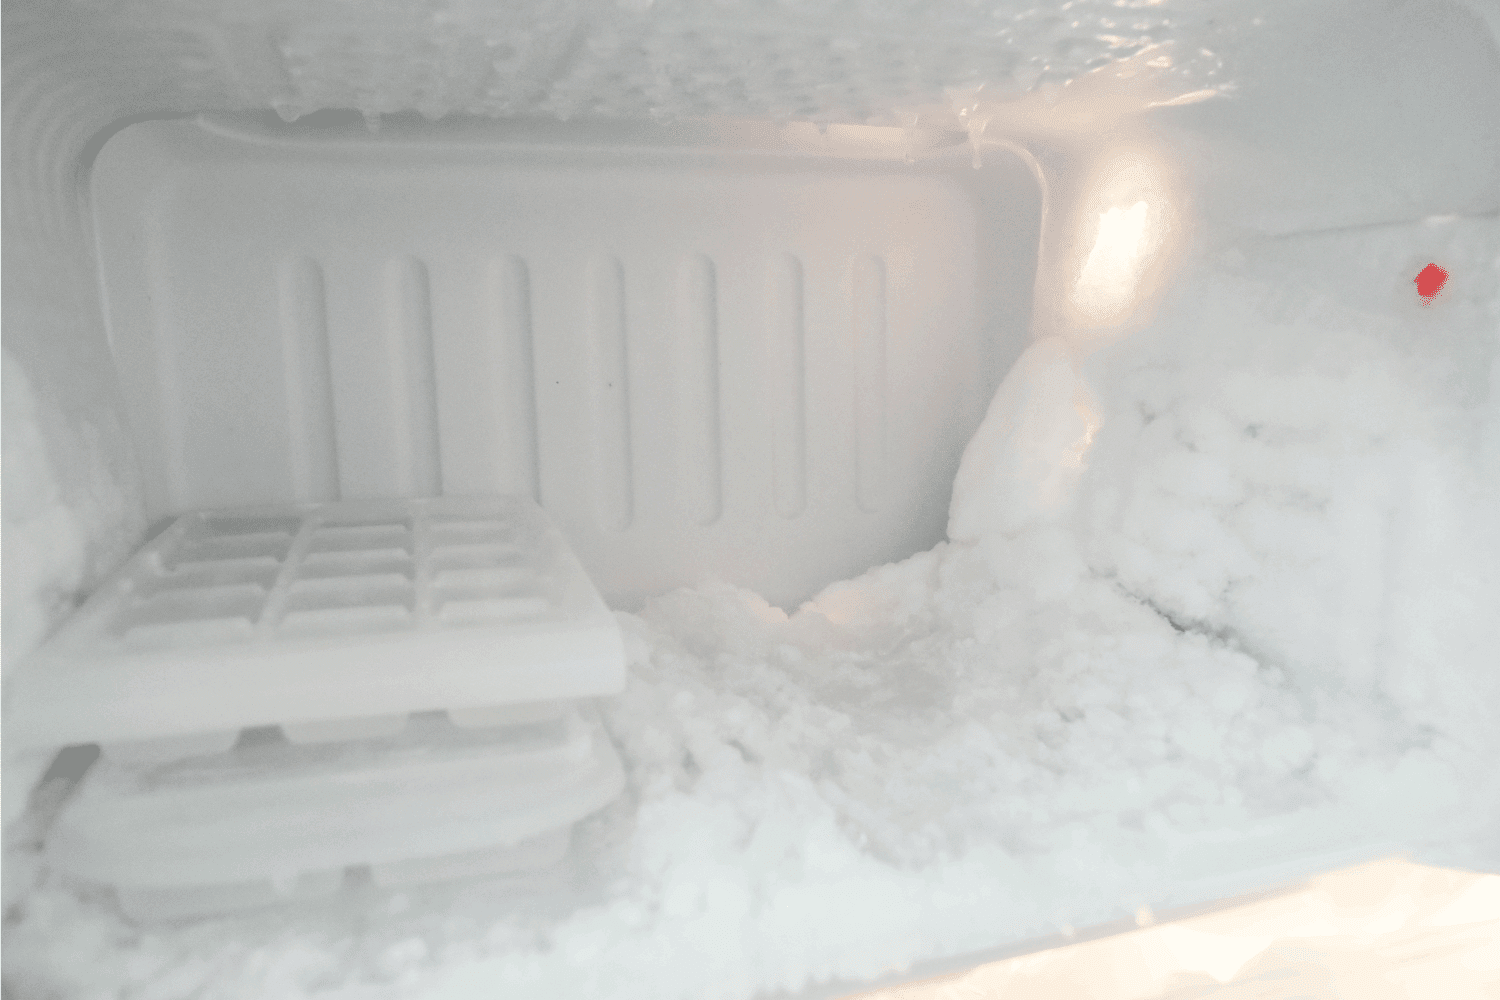 冷冻在冰箱里。加冰过多对冰箱的影响不充分